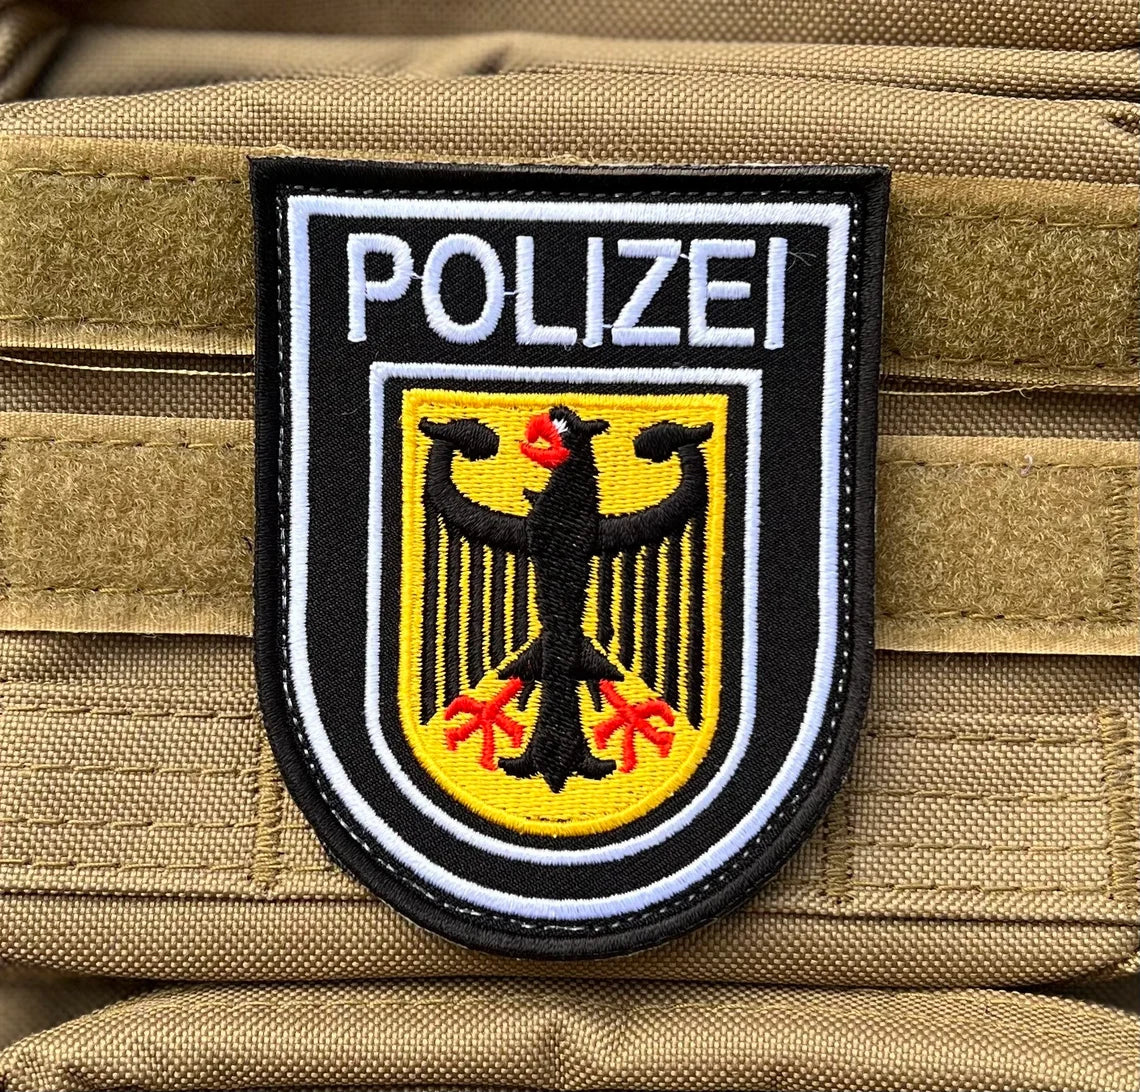 Polizei Deutschland Patch – Inch) German Velcro (3.65 Badge Police